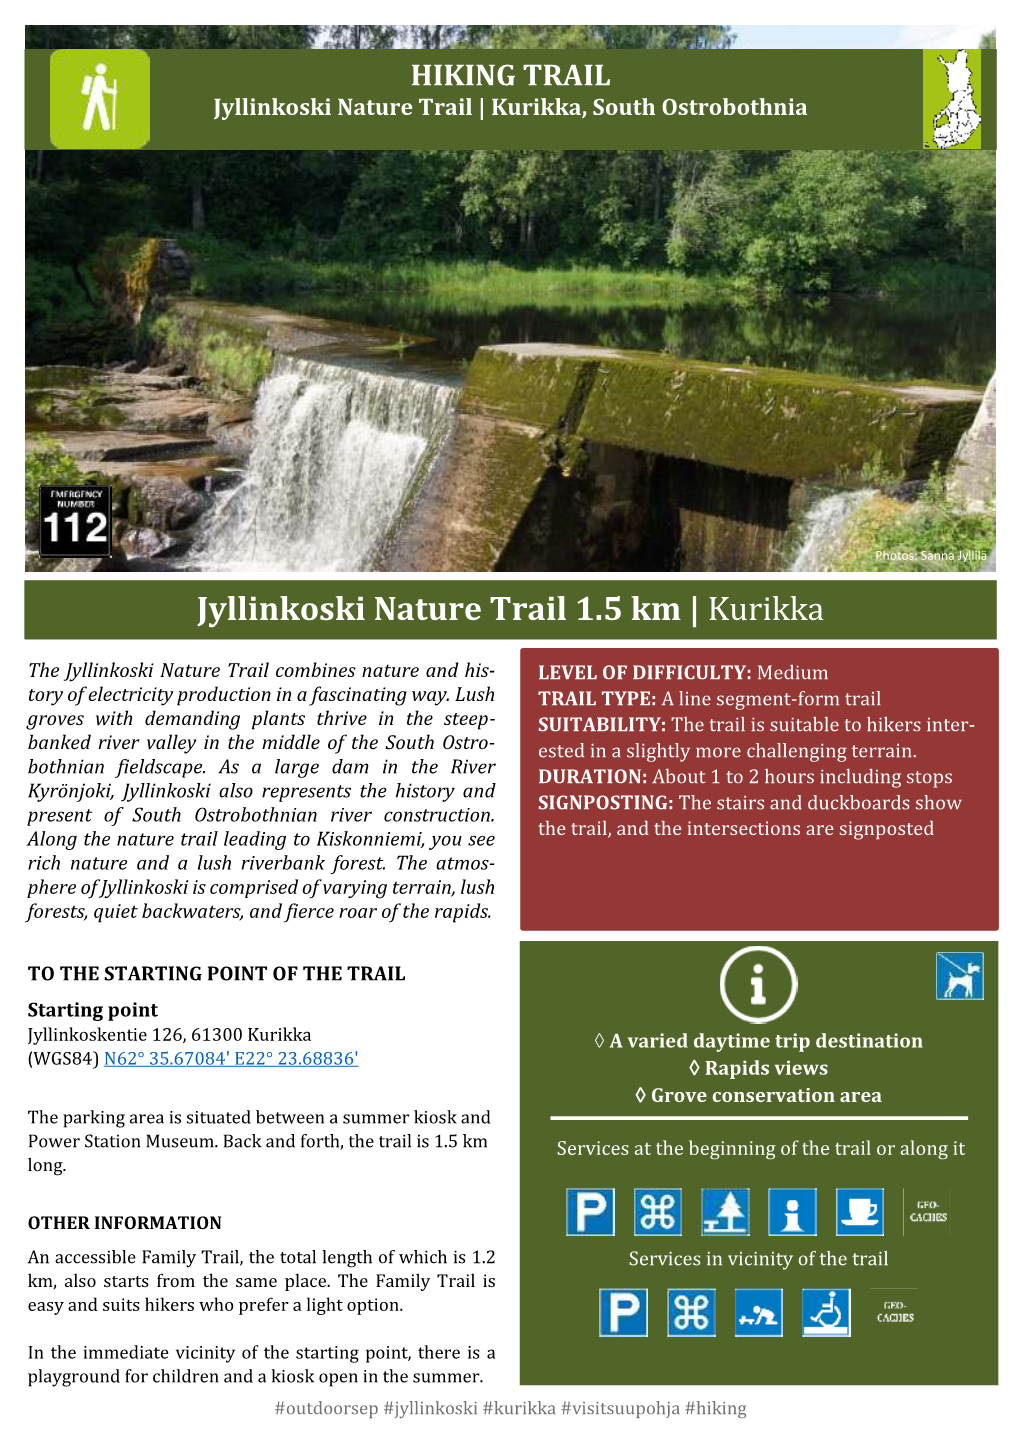 Jyllinkoski Nature Trail 1.5 Km | Kurikka